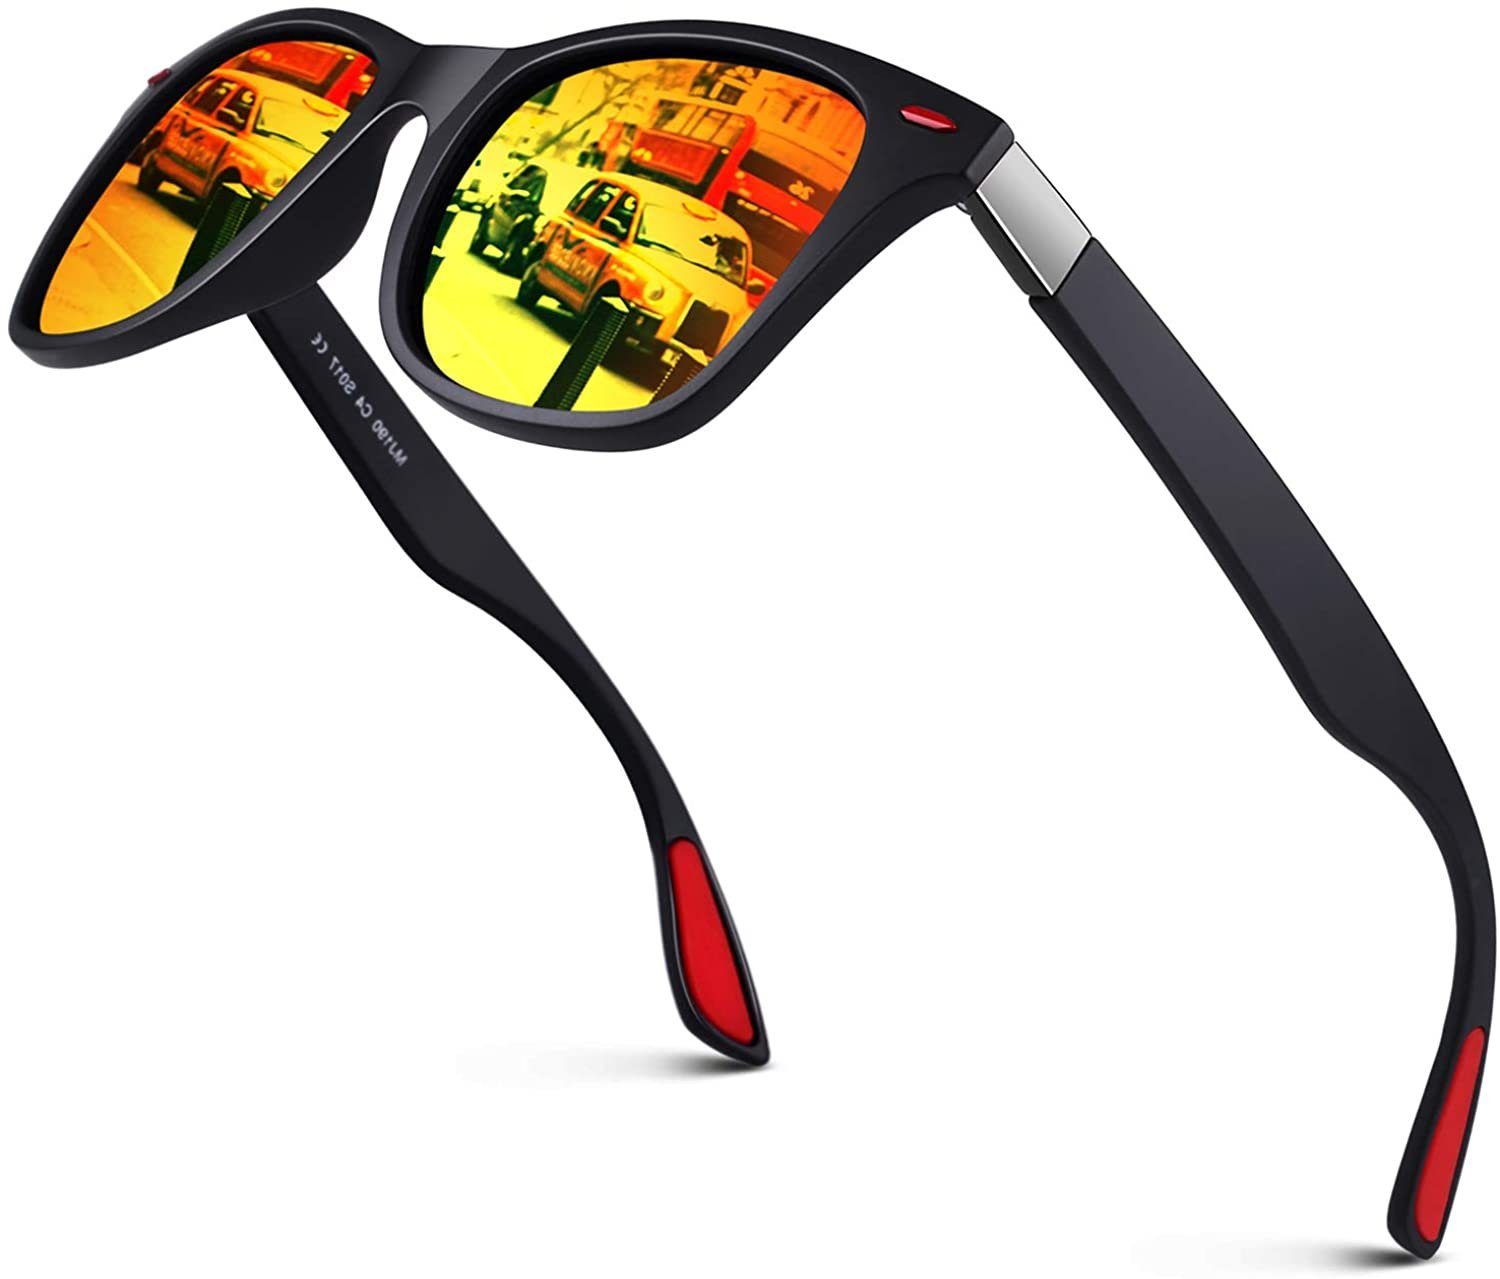 und Sonnenbrillen quadratische Retro-Sonnenbrille, Vintage-Sonnenbrille, Männer Frauen, UV400-Spiegelbrillen für Fahren Ultraleichter XDeer TAC-Linse Retrosonnenbrille Film TR90-Rahmen Polarisiert Golf Angeln Schwarzer modische HD Rahmen/rotes Stoßfeste Polarisierte